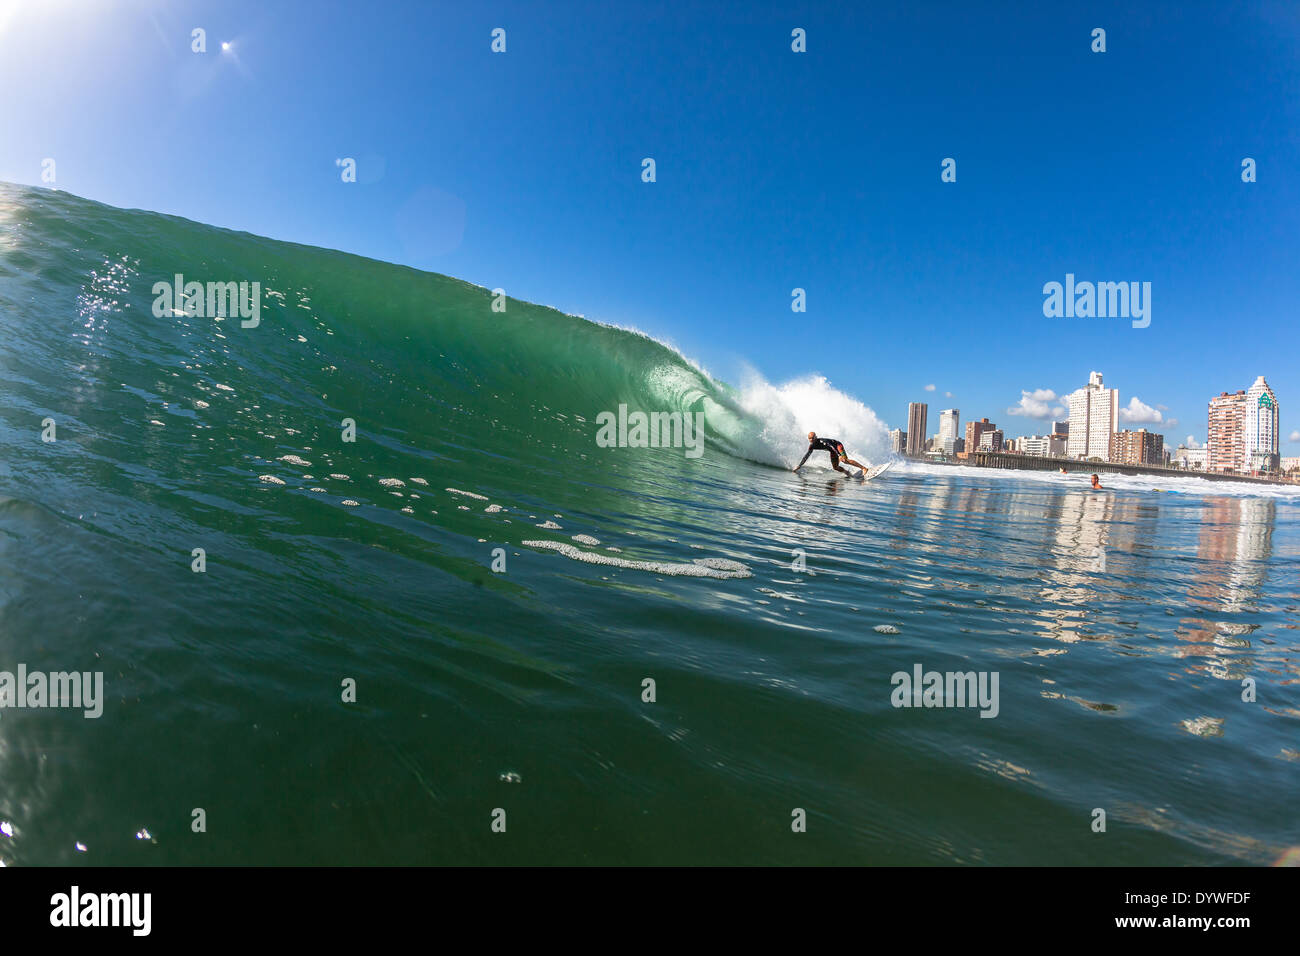 Surfen Surfer reitet hohle brechenden Wellen Schwimmen Wasser Foto Aktion. Stockfoto